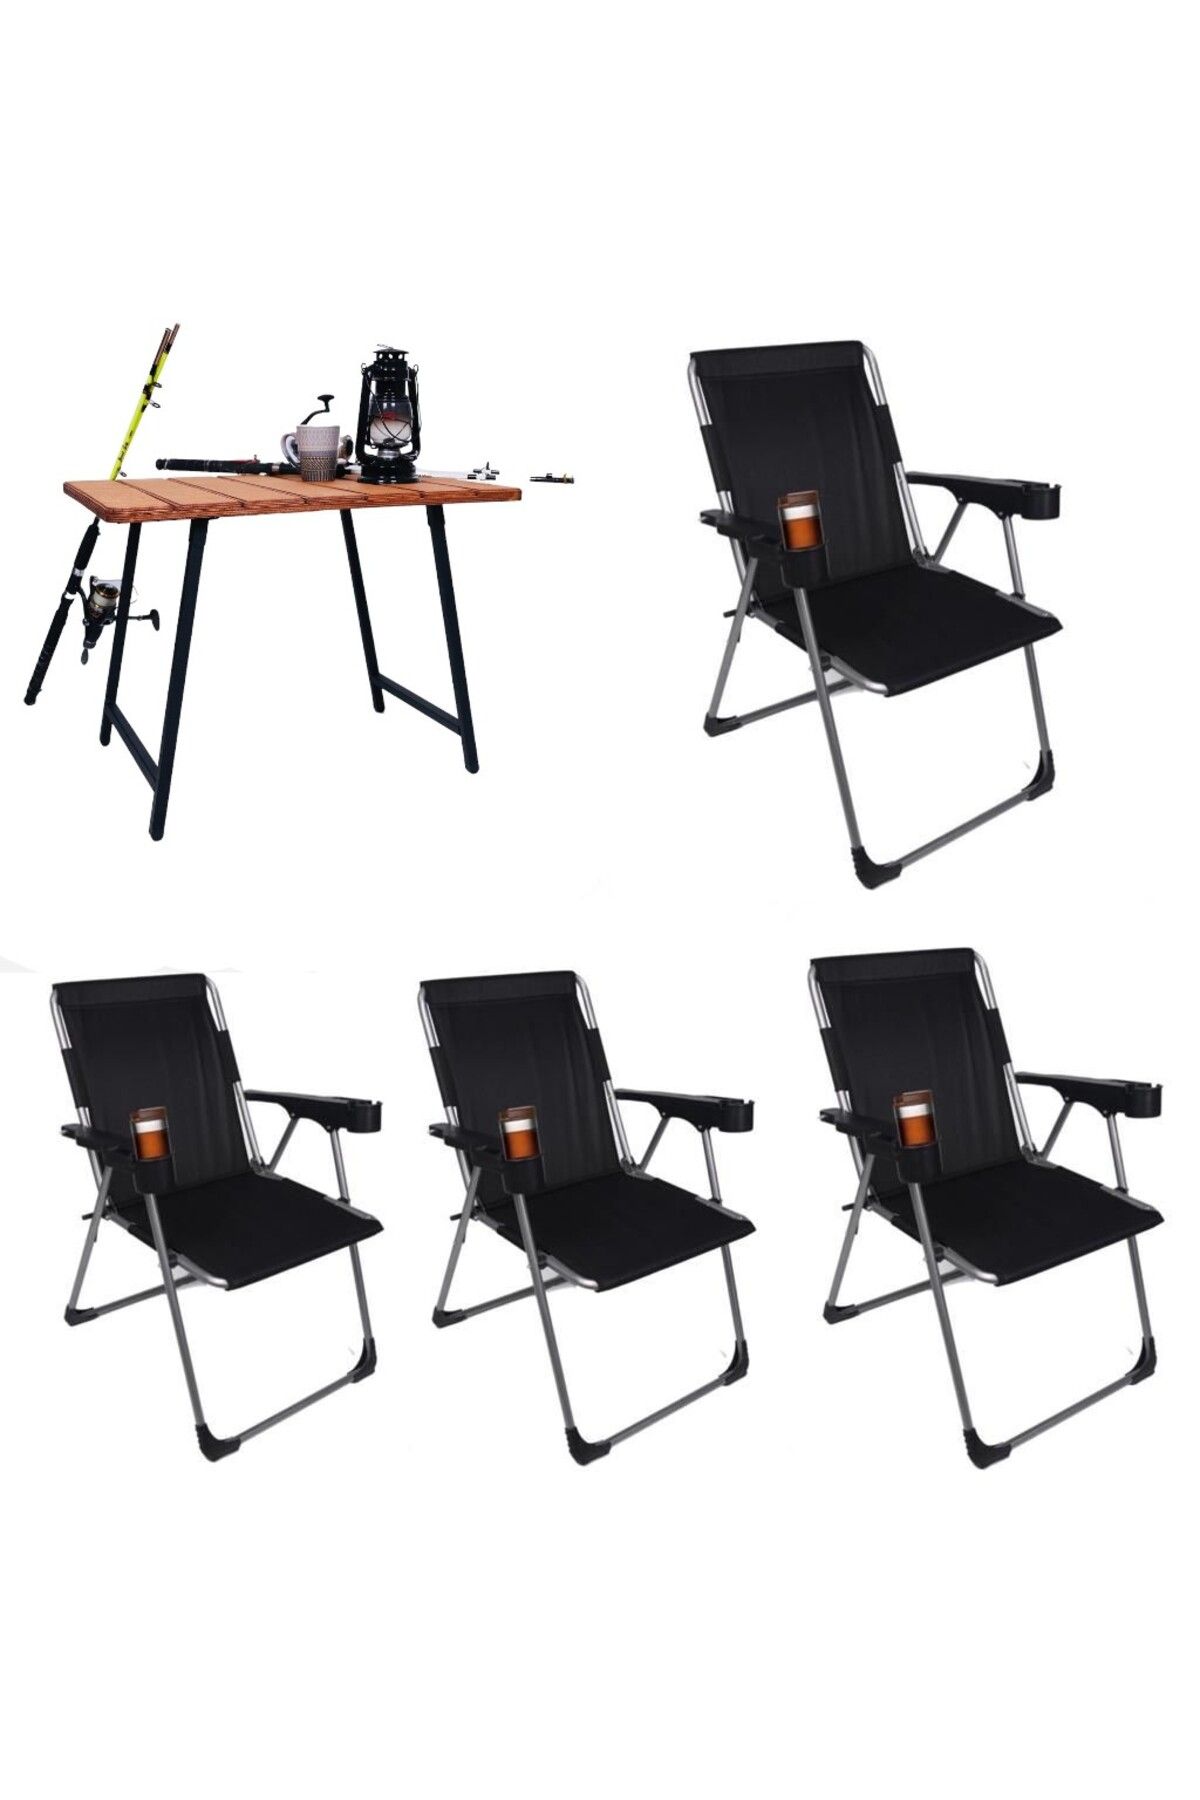 ALİN METAL Kamp Sandalyesi 4''lü Lüks Bardaklı Kamp Sandalyesi Ve Masa Set Fdr-01